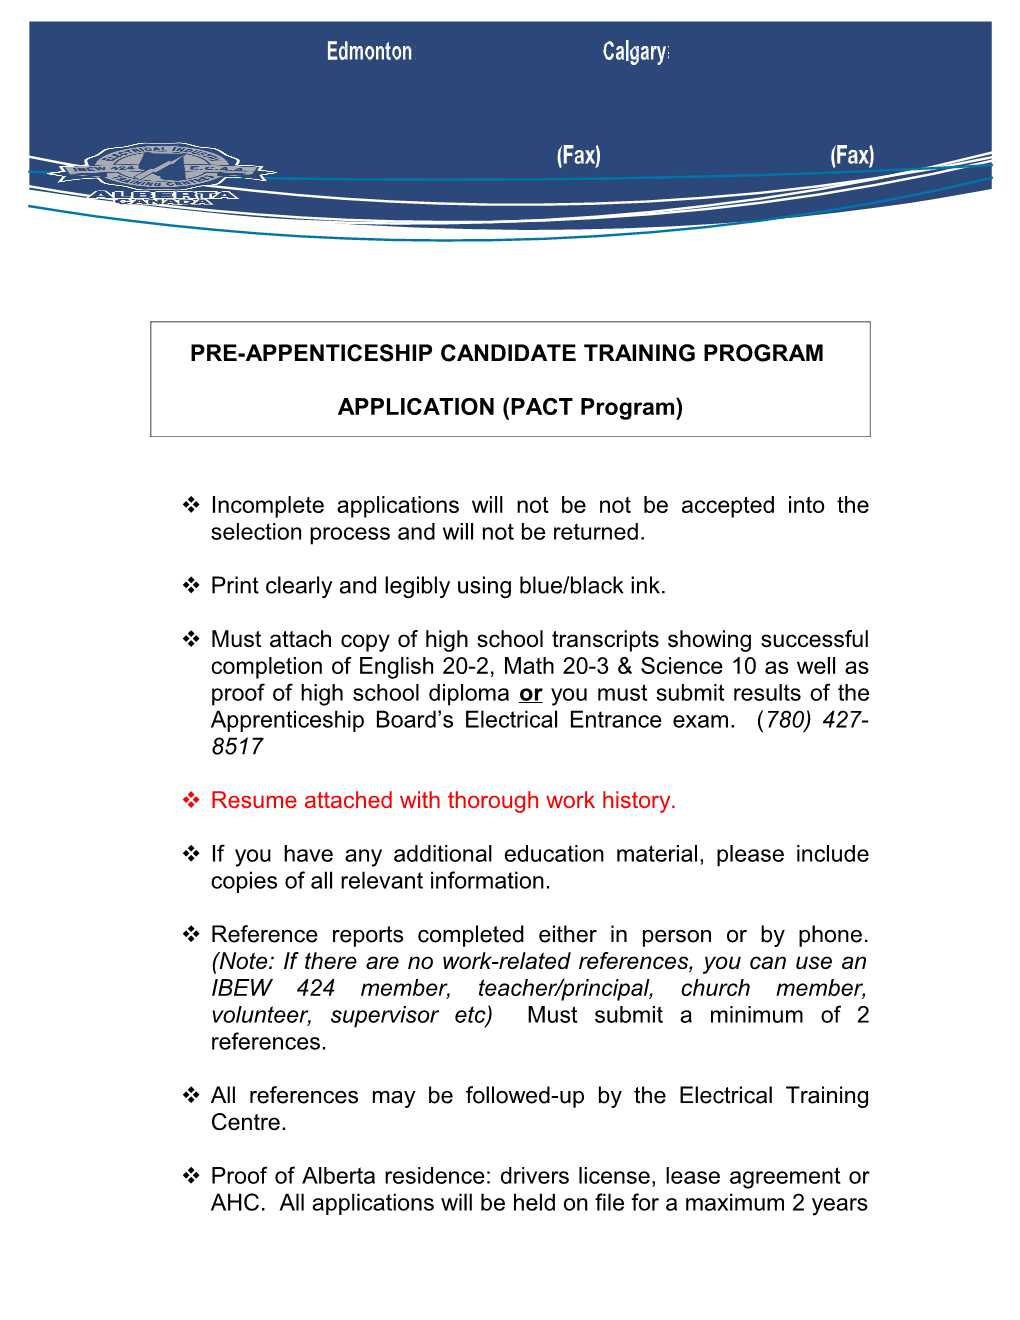 Pre-Appenticeship Candidate Training Program